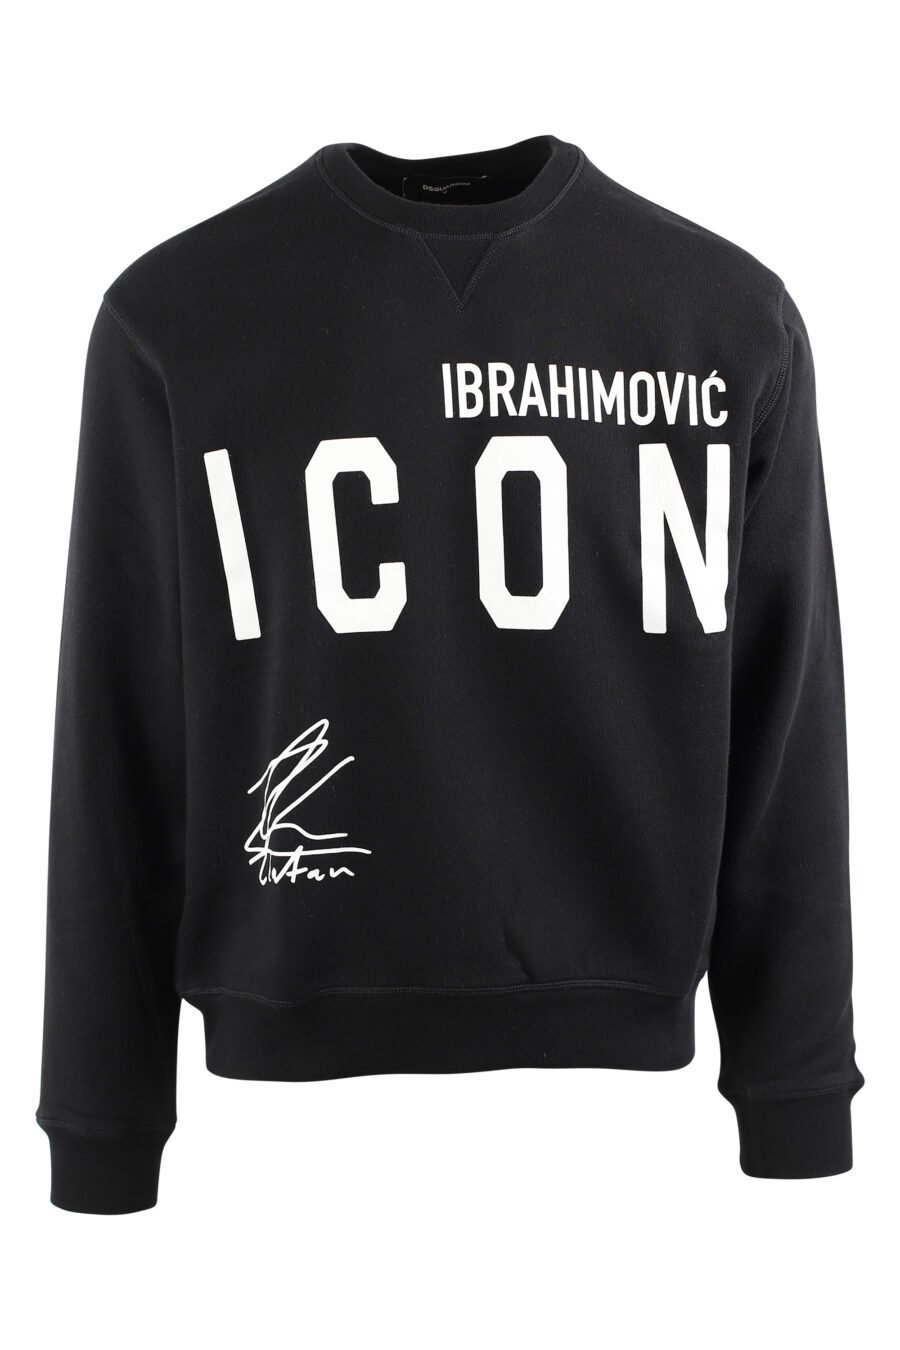 Sudadera negra con logo "icon ibrahimovic" - IMG 0441